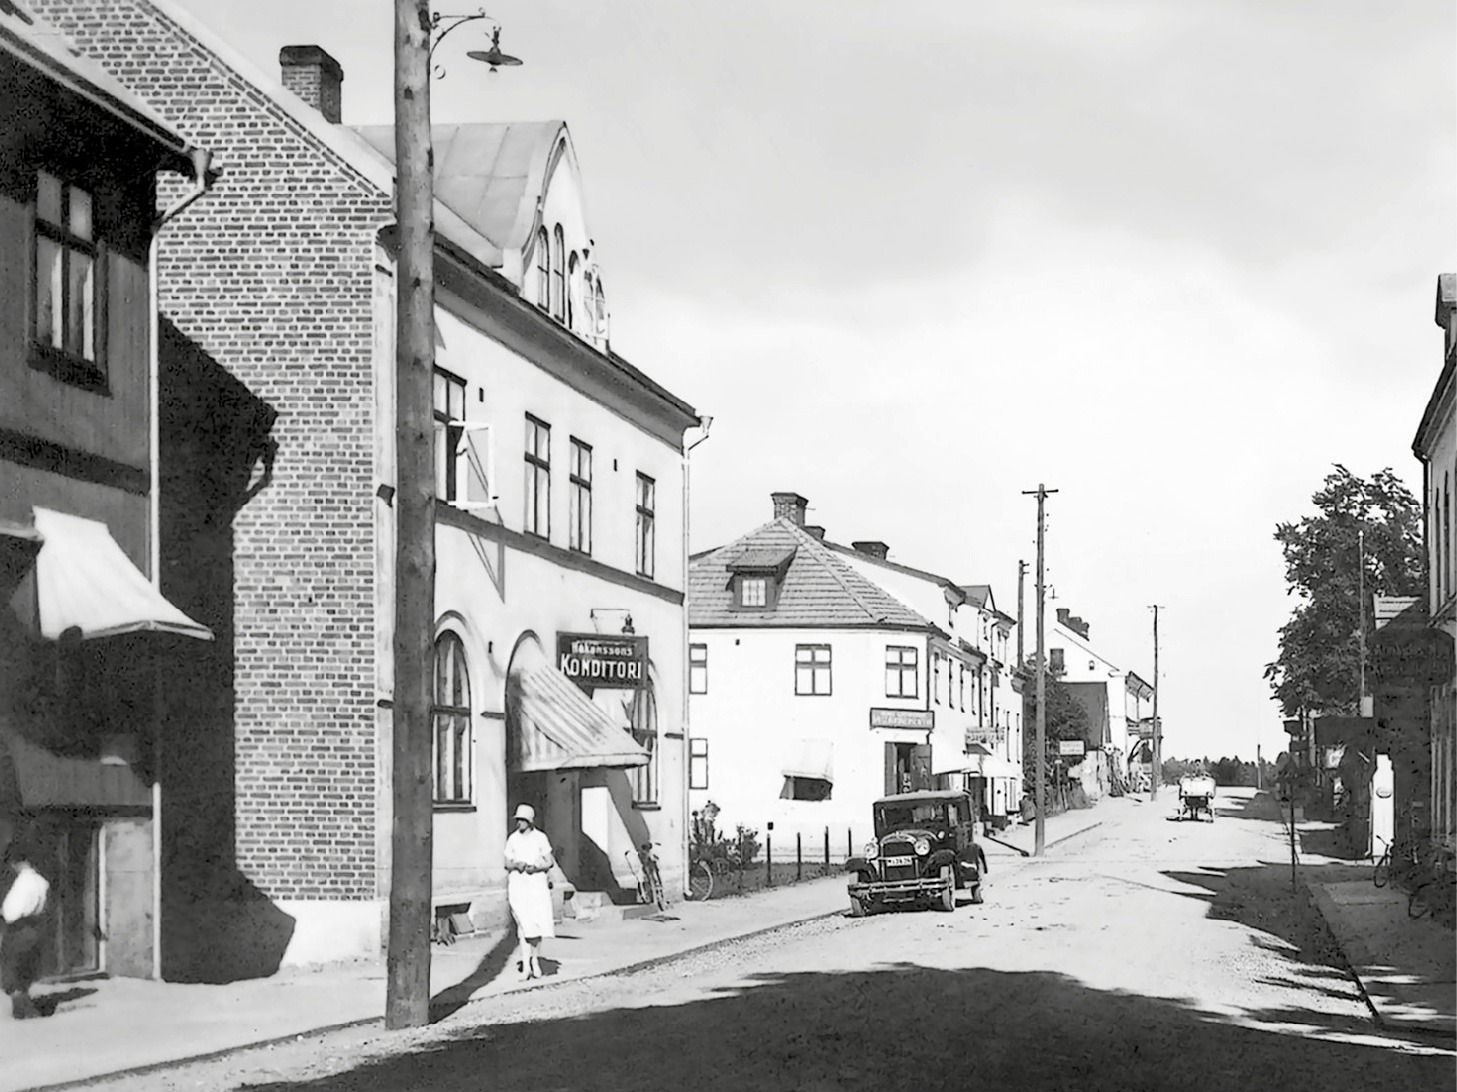 Ruhige schwedische Straße in den 1930ern, eine weiß gekleidete Frau auf dem Gehweg, ein geparktes und ein fahrendes Auto.